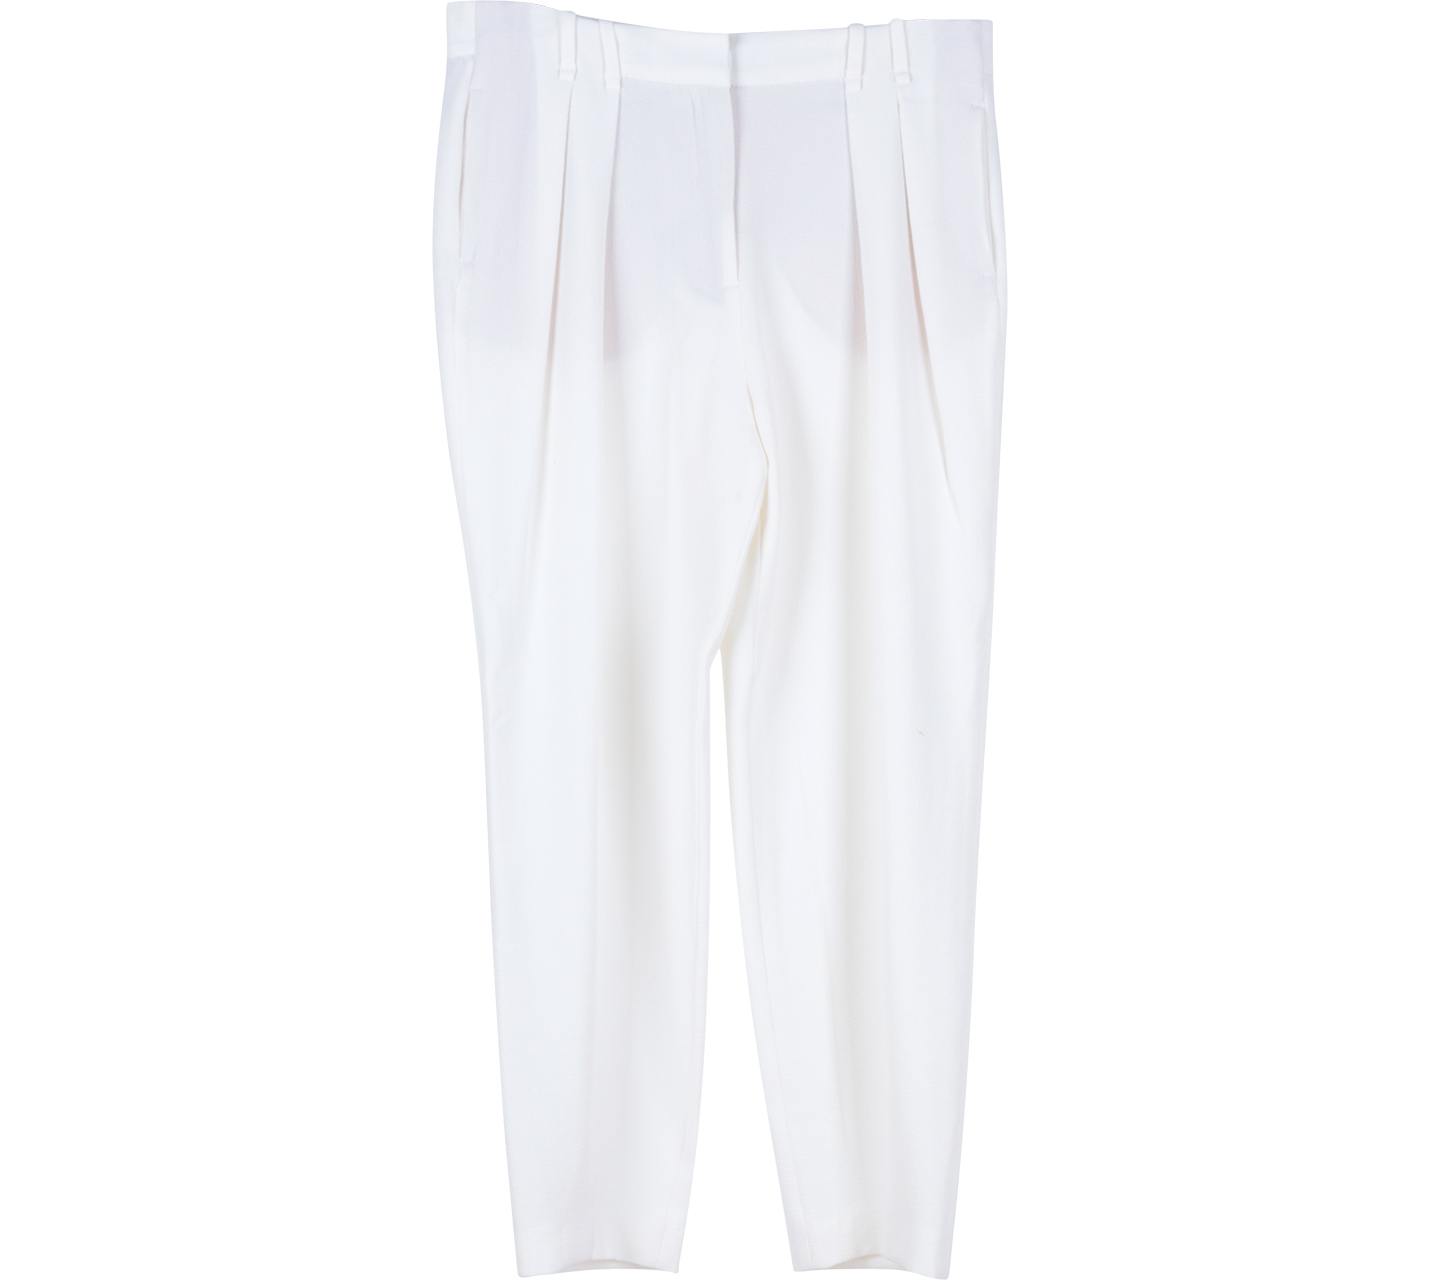 Zara White Textured Pants